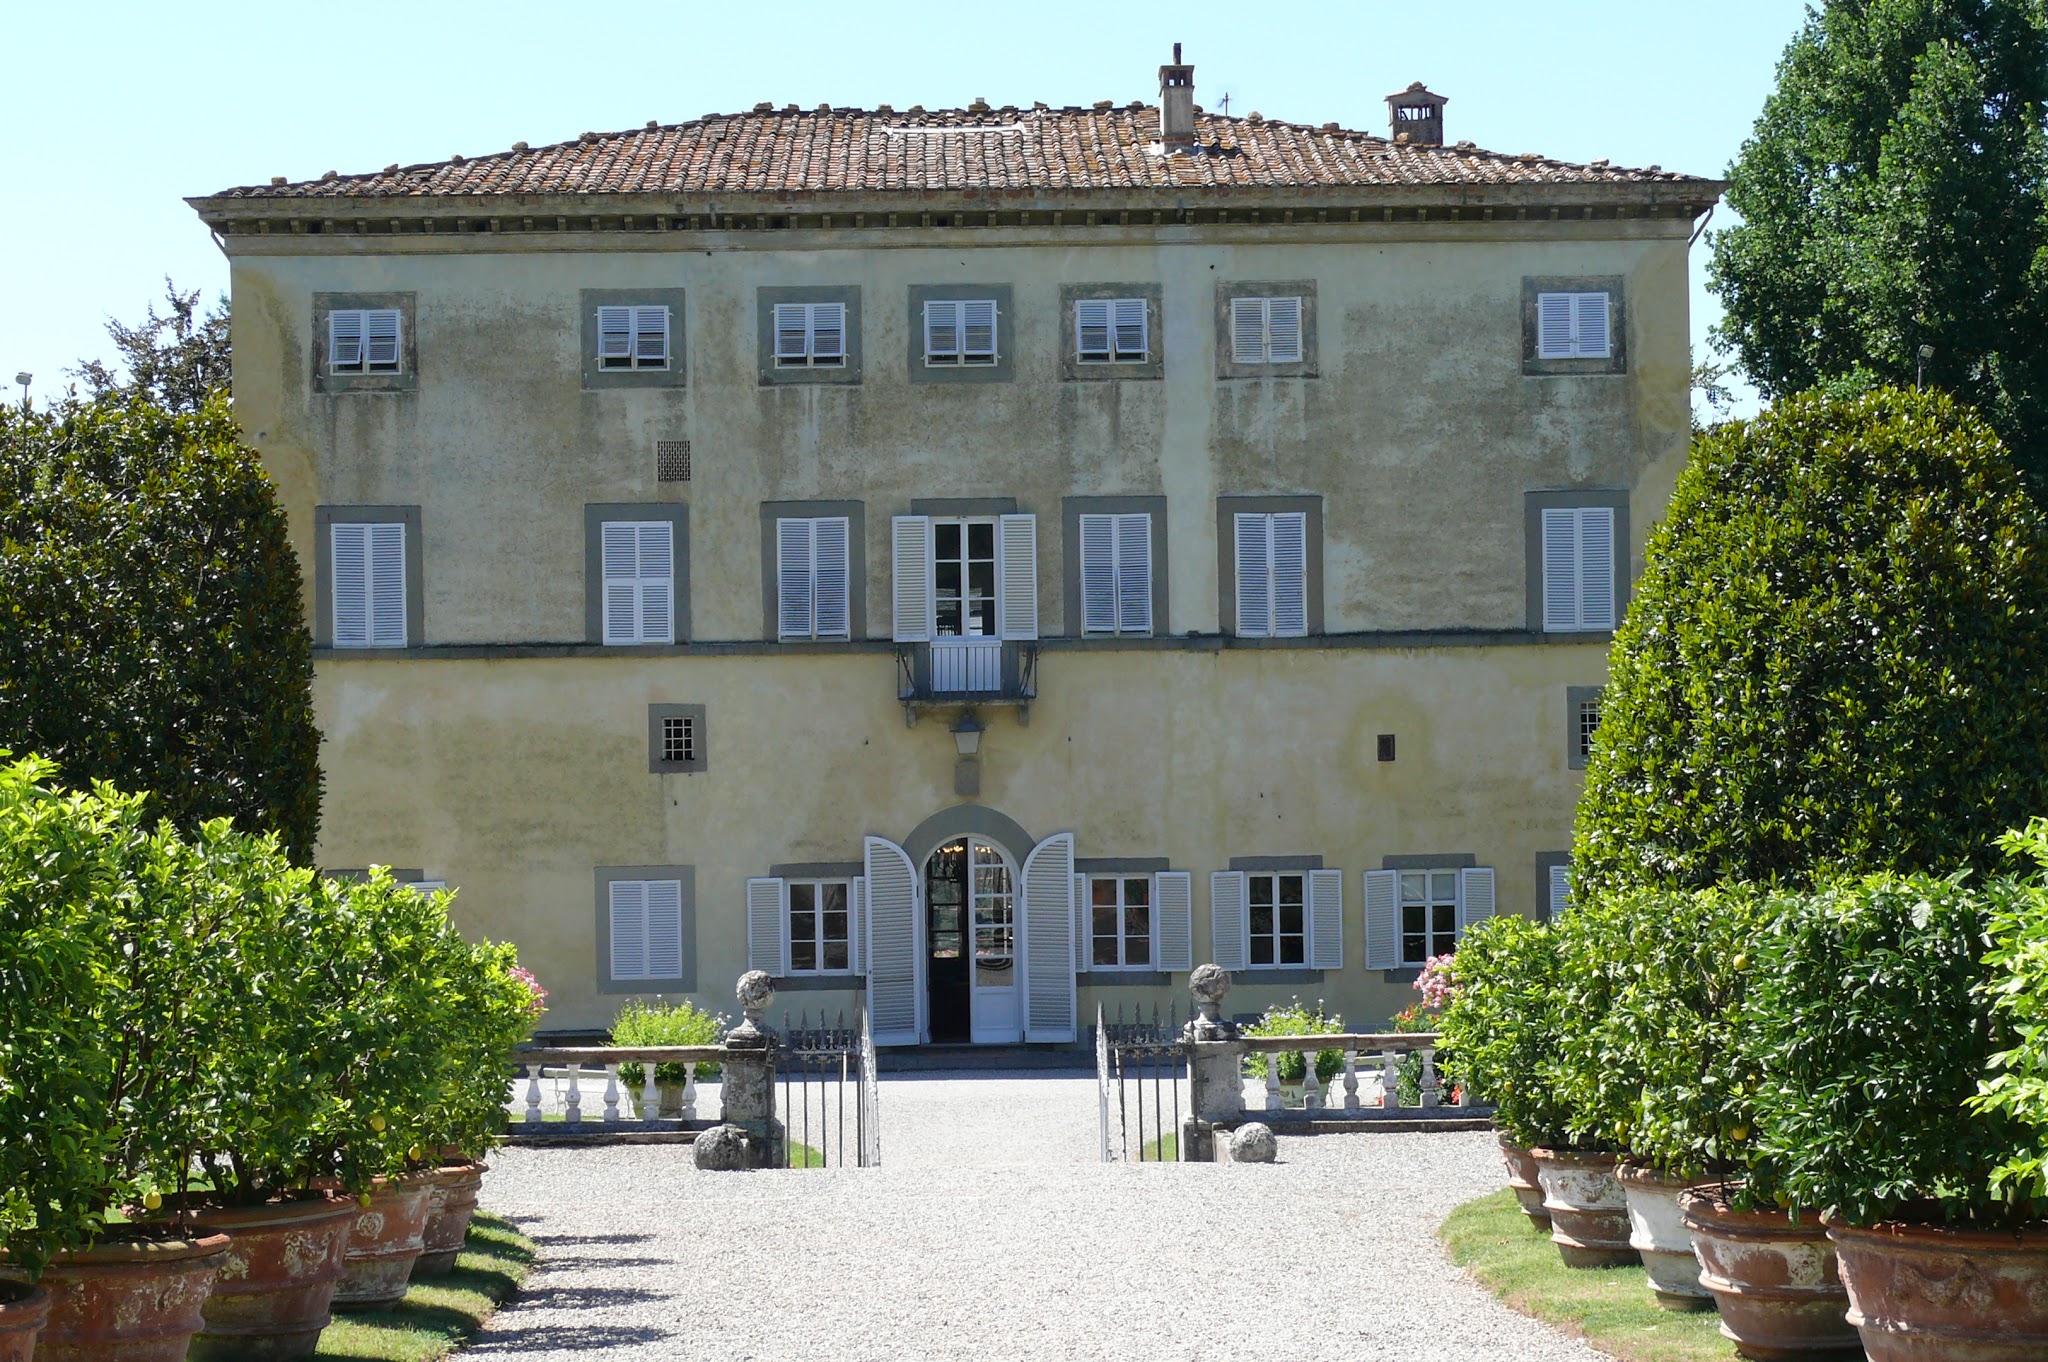 Marlia - Villa Grabau